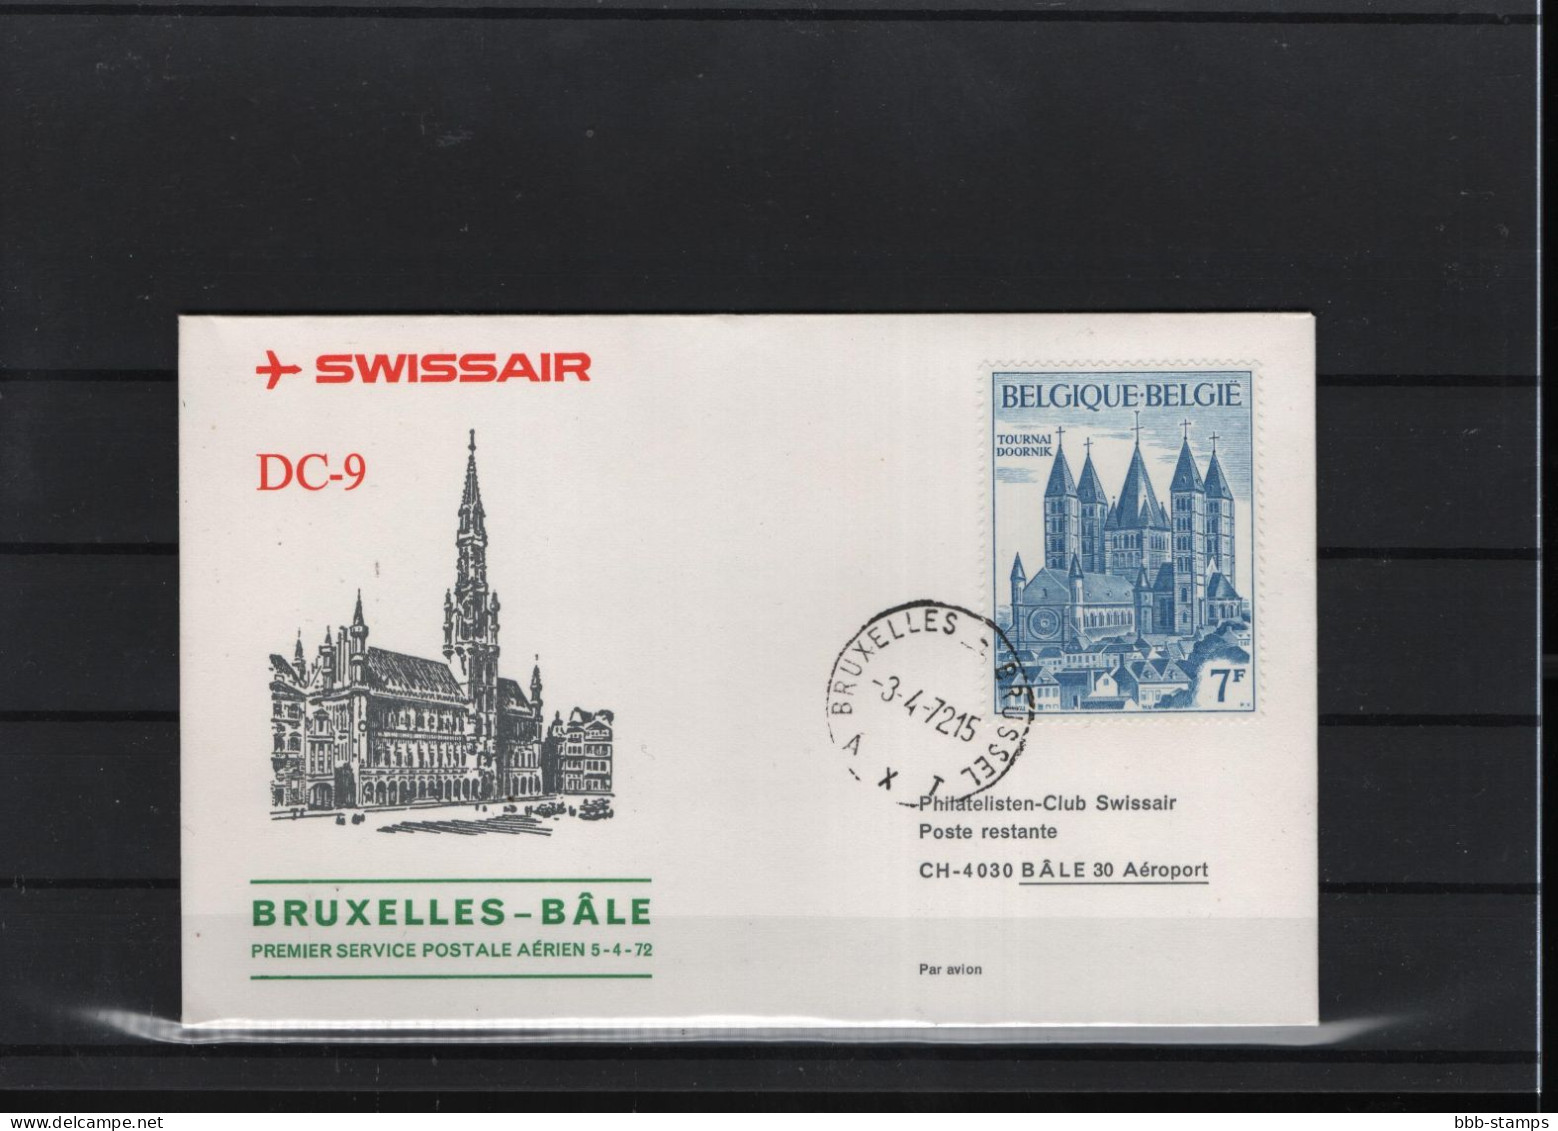 Schweiz Luftpost FFC Swissair  3.4.1972 Brussel - Basel - First Flight Covers